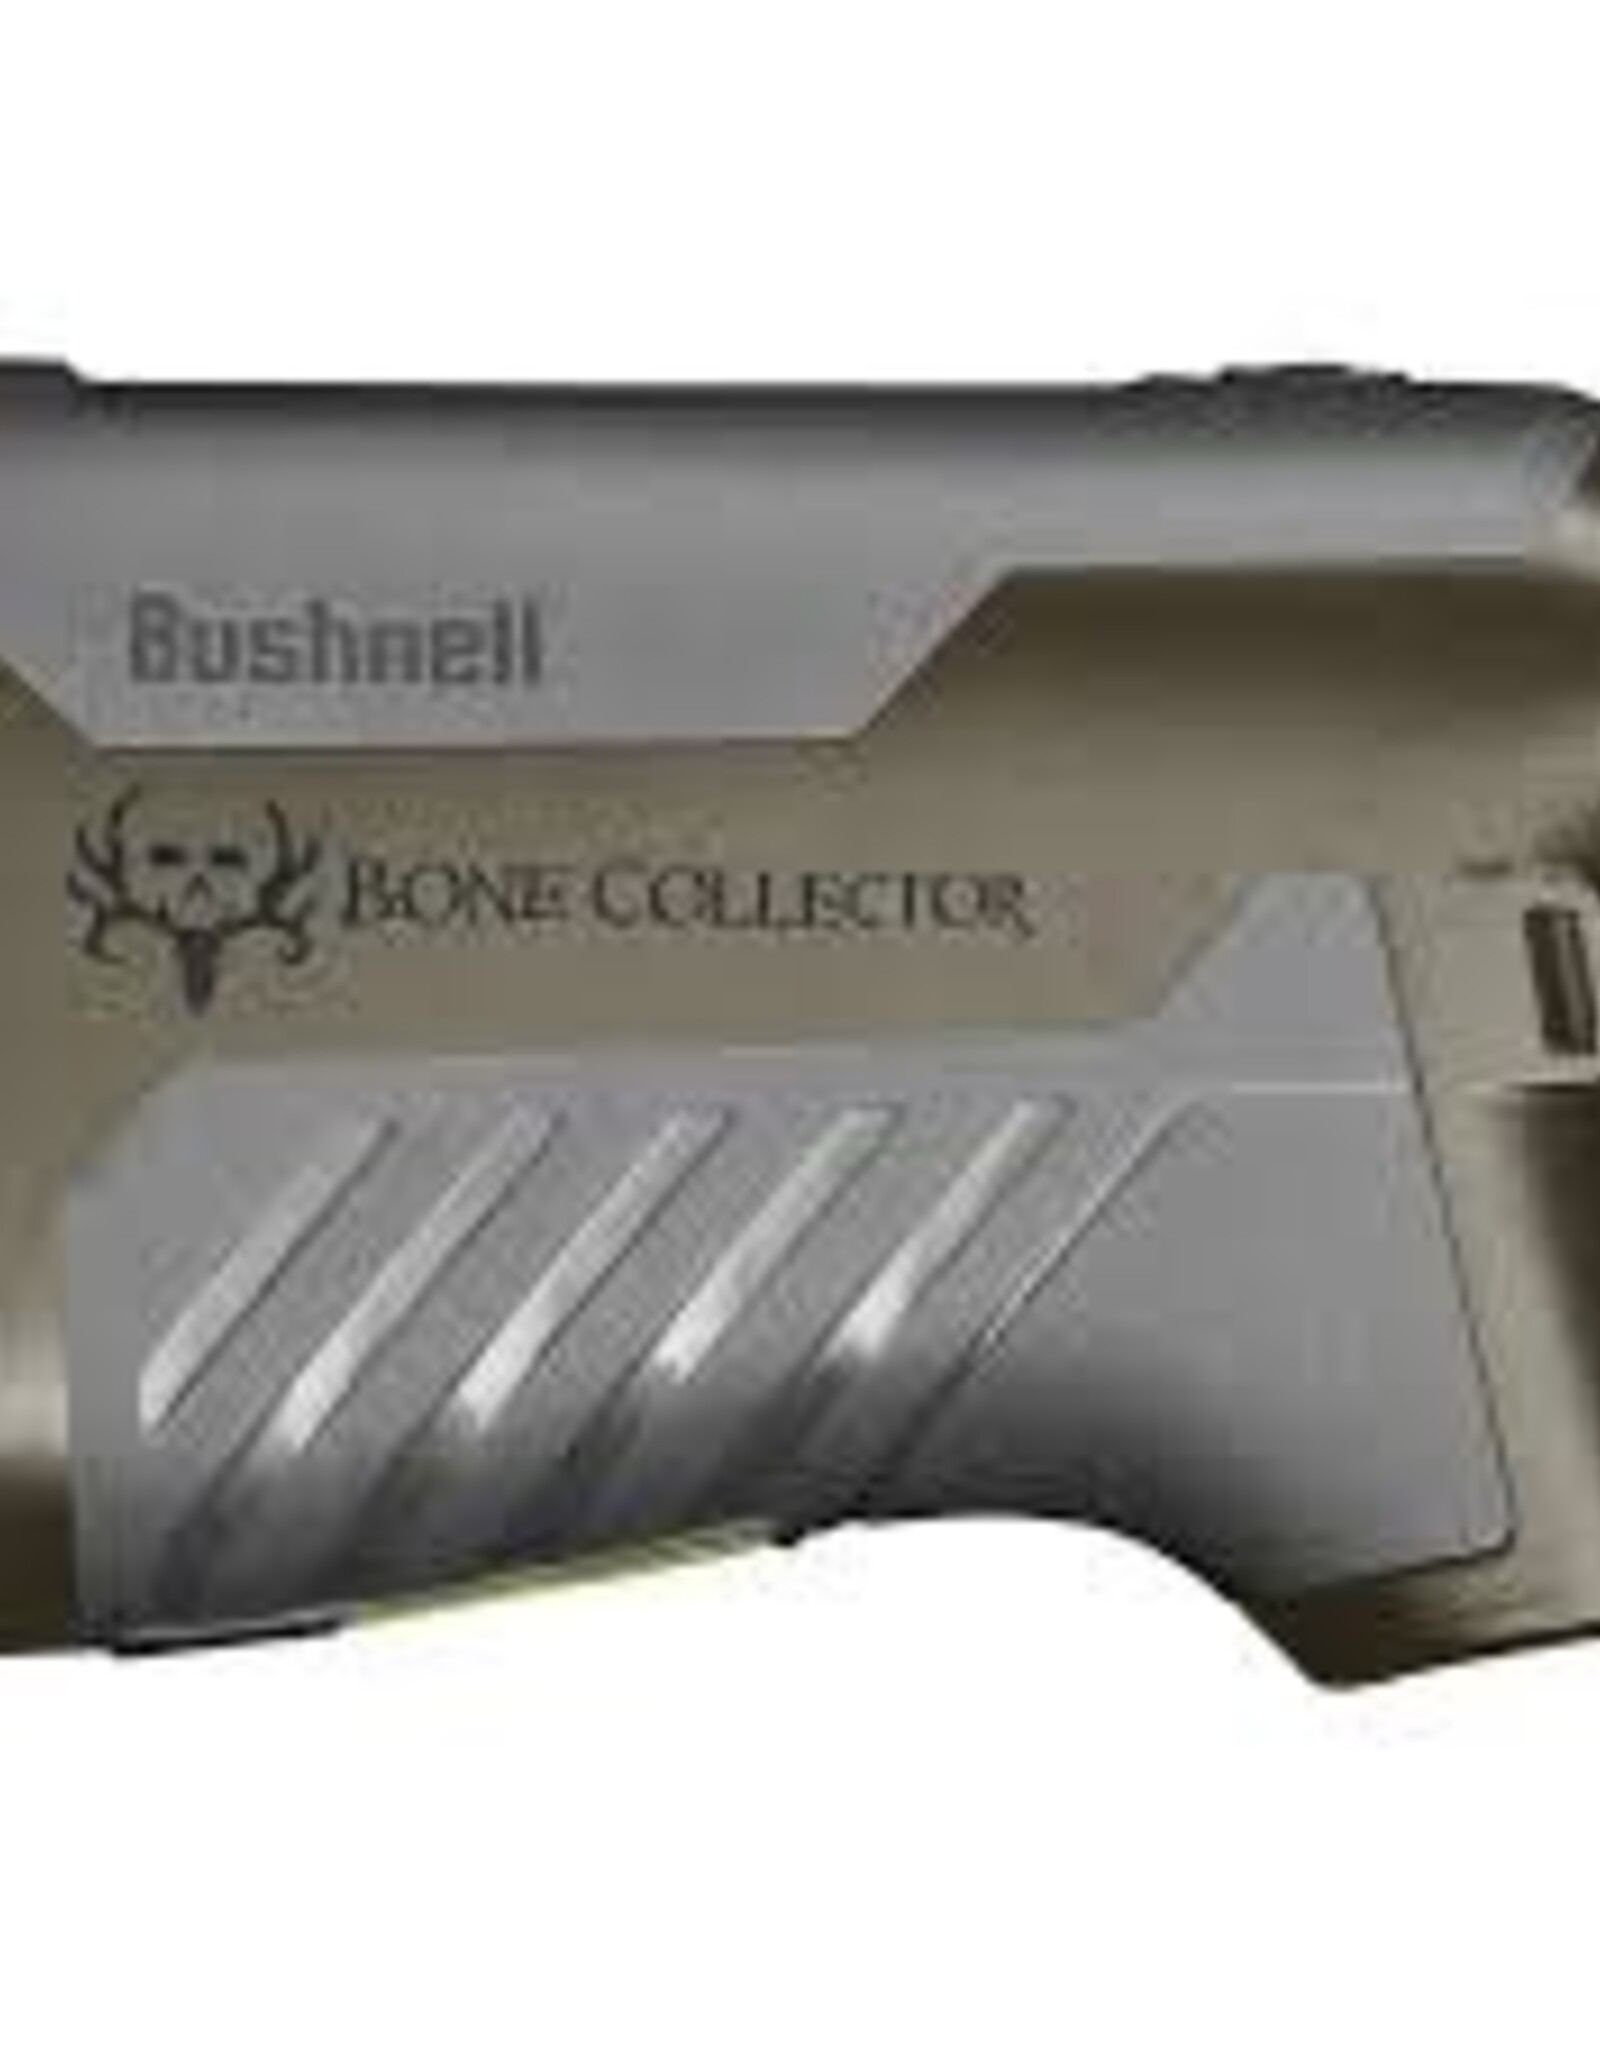 Bushnell Bone Collector 6x25mm Range Finder Bluetooth with Applied Ballistics